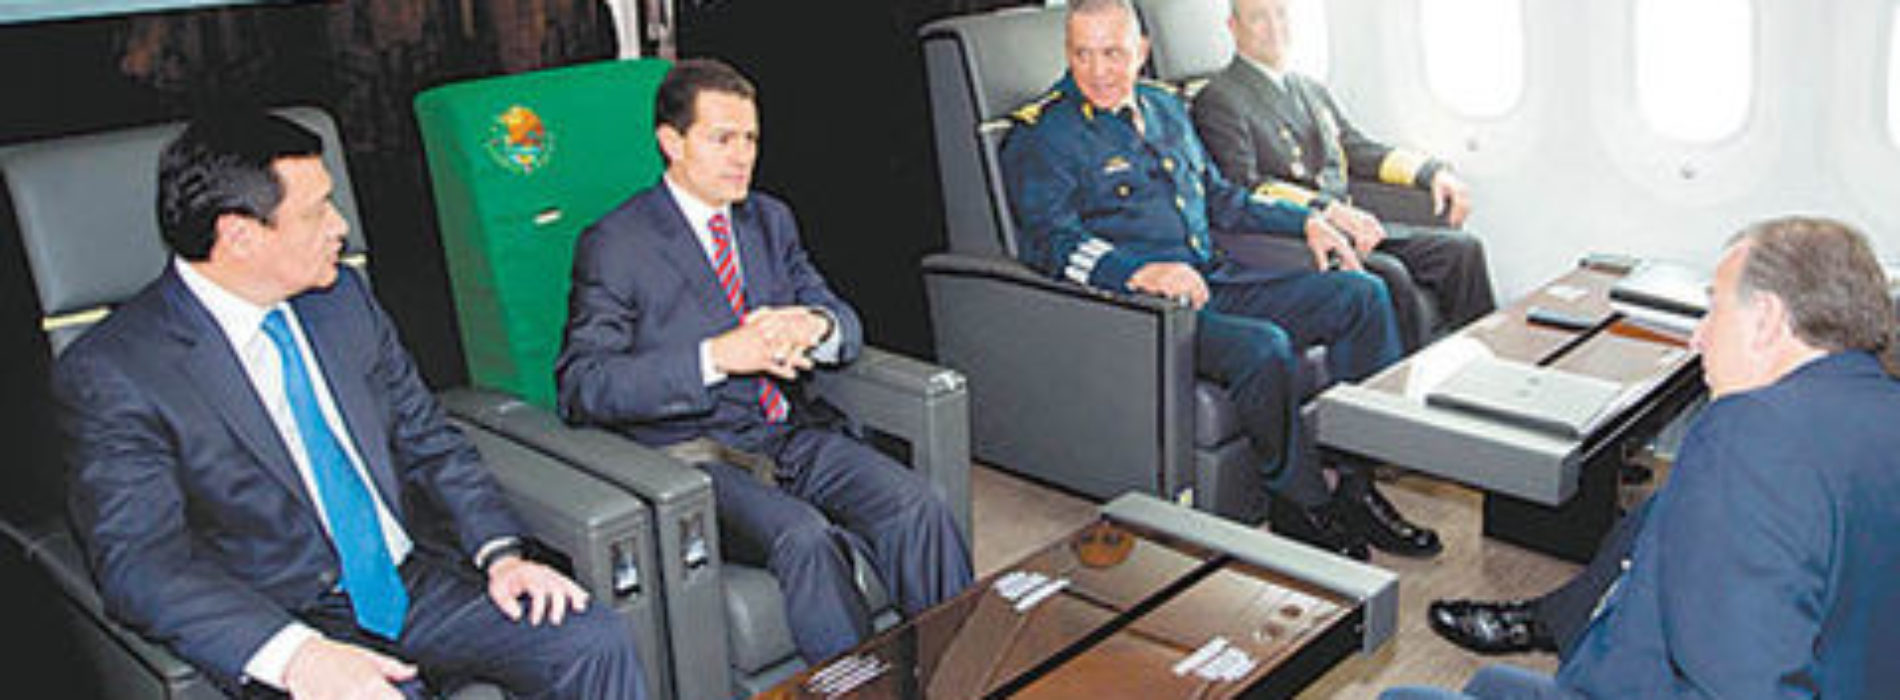 El avión, “del gobierno, no del Presidente”: Peña